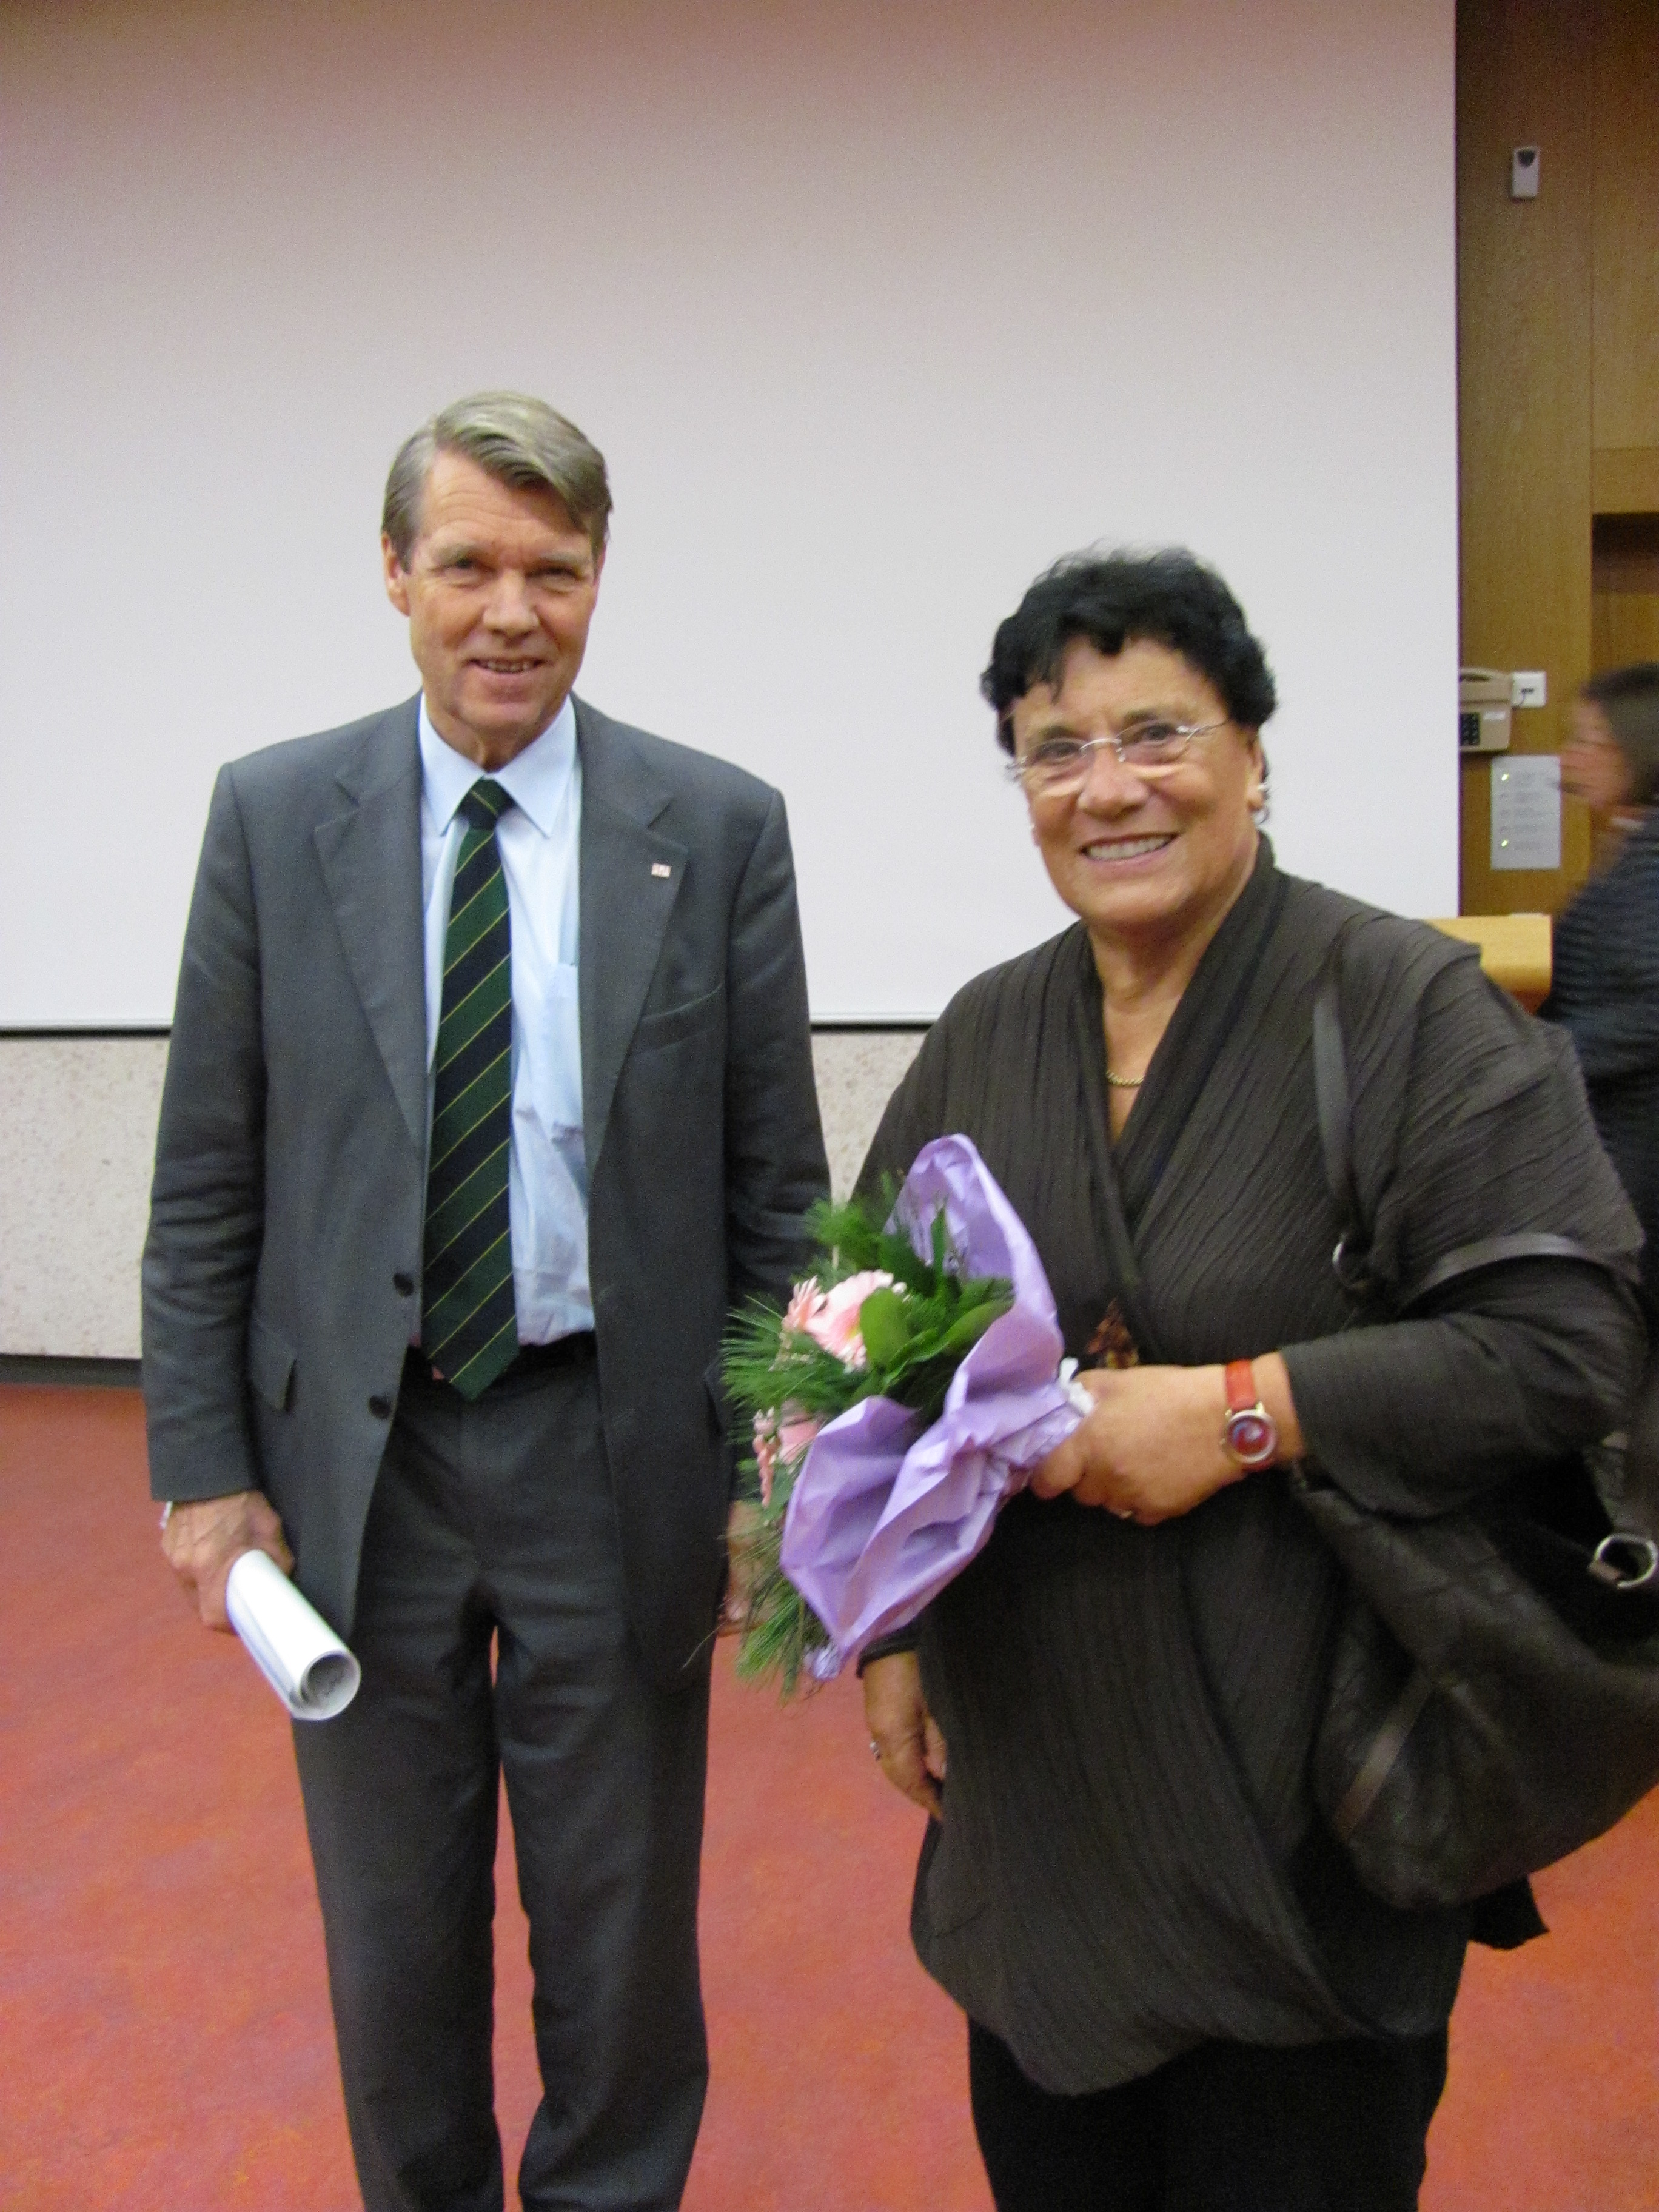 Das Bild zeigt die Namensgeberin des Mentoring-Programms Professorin Ina Pichlmayr und den ehemaligen Präsidenten der MHH Prof. Dr. Bitter-Suermann (2004-2013). Sie lächeln in die Kamera.